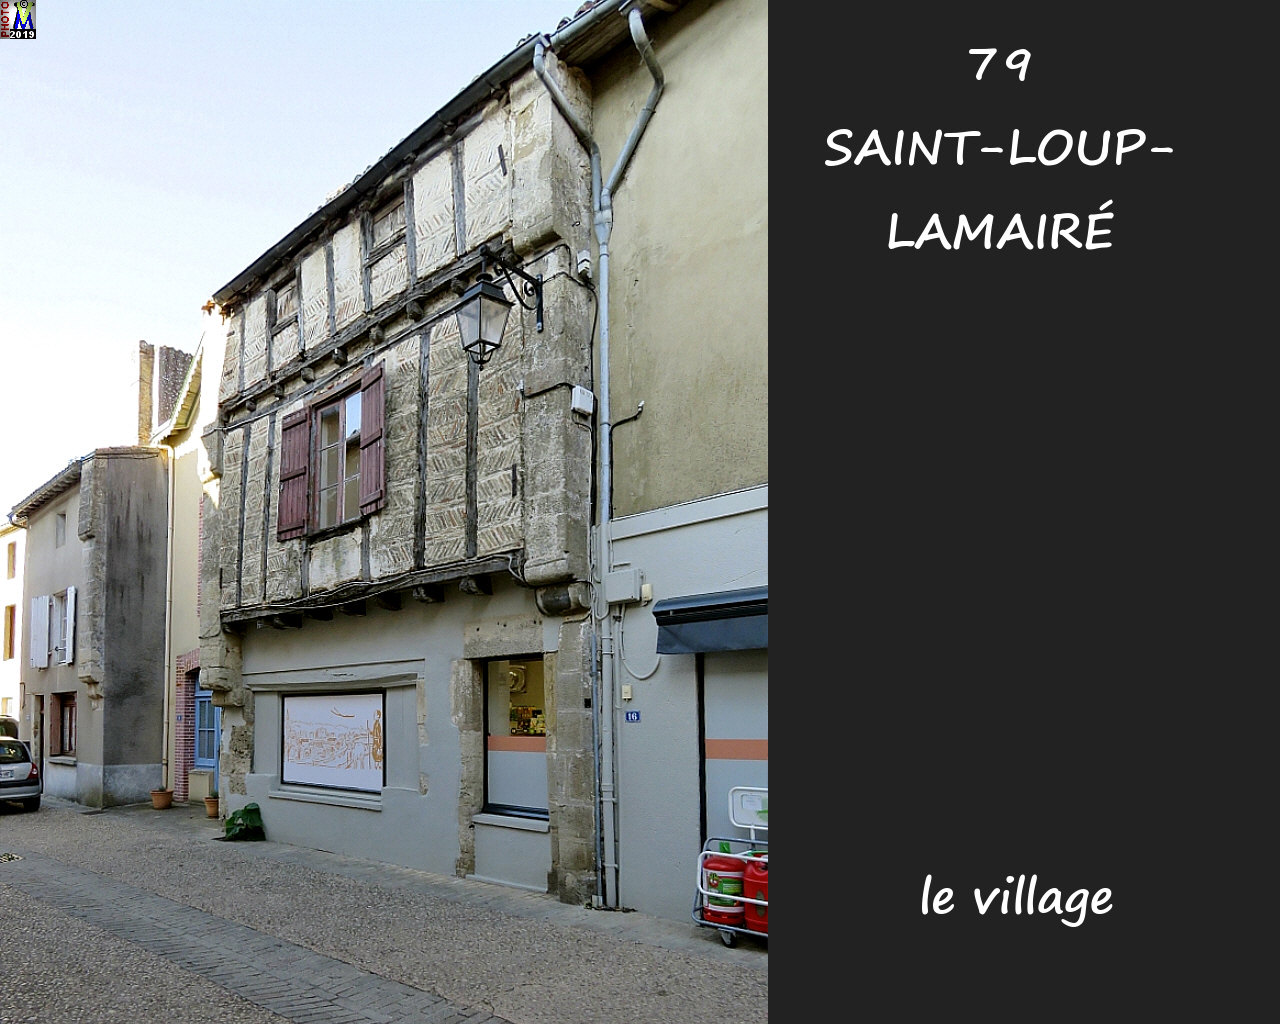 79StLOUP-LAMAIRE_village_1022.jpg